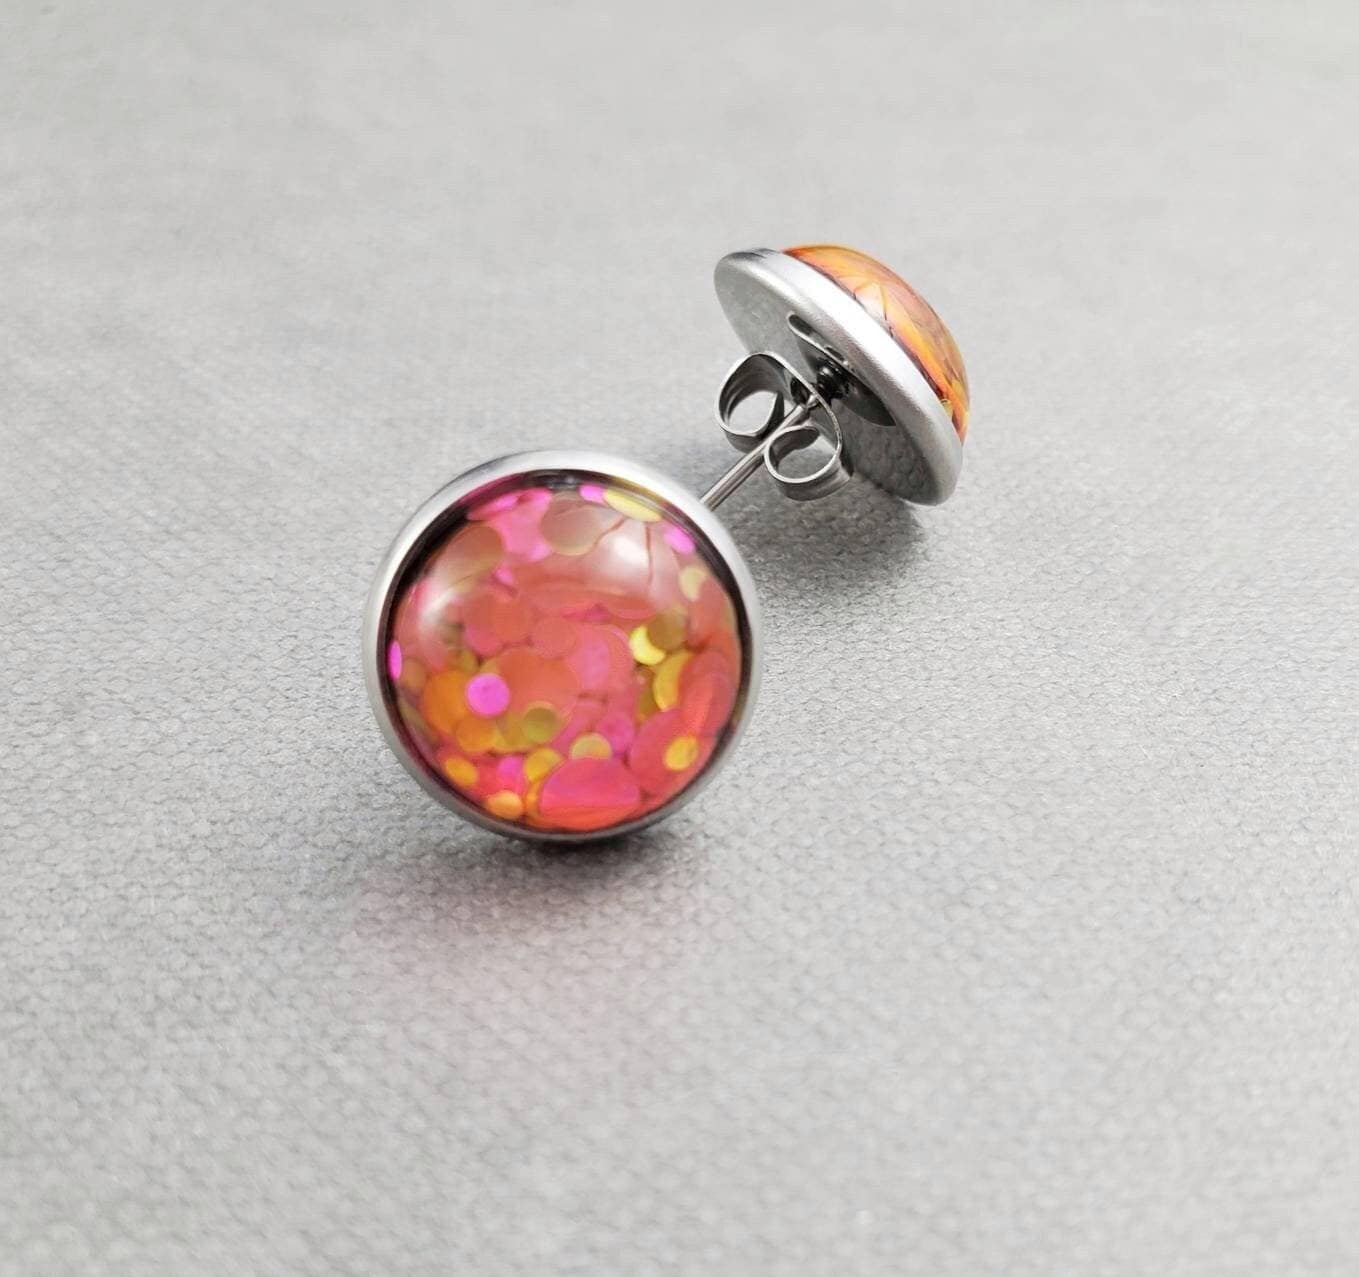 Pink Glitter Stainless Steel Stud Earrings, Handmade Jewelry by MichelleAnnJewelry